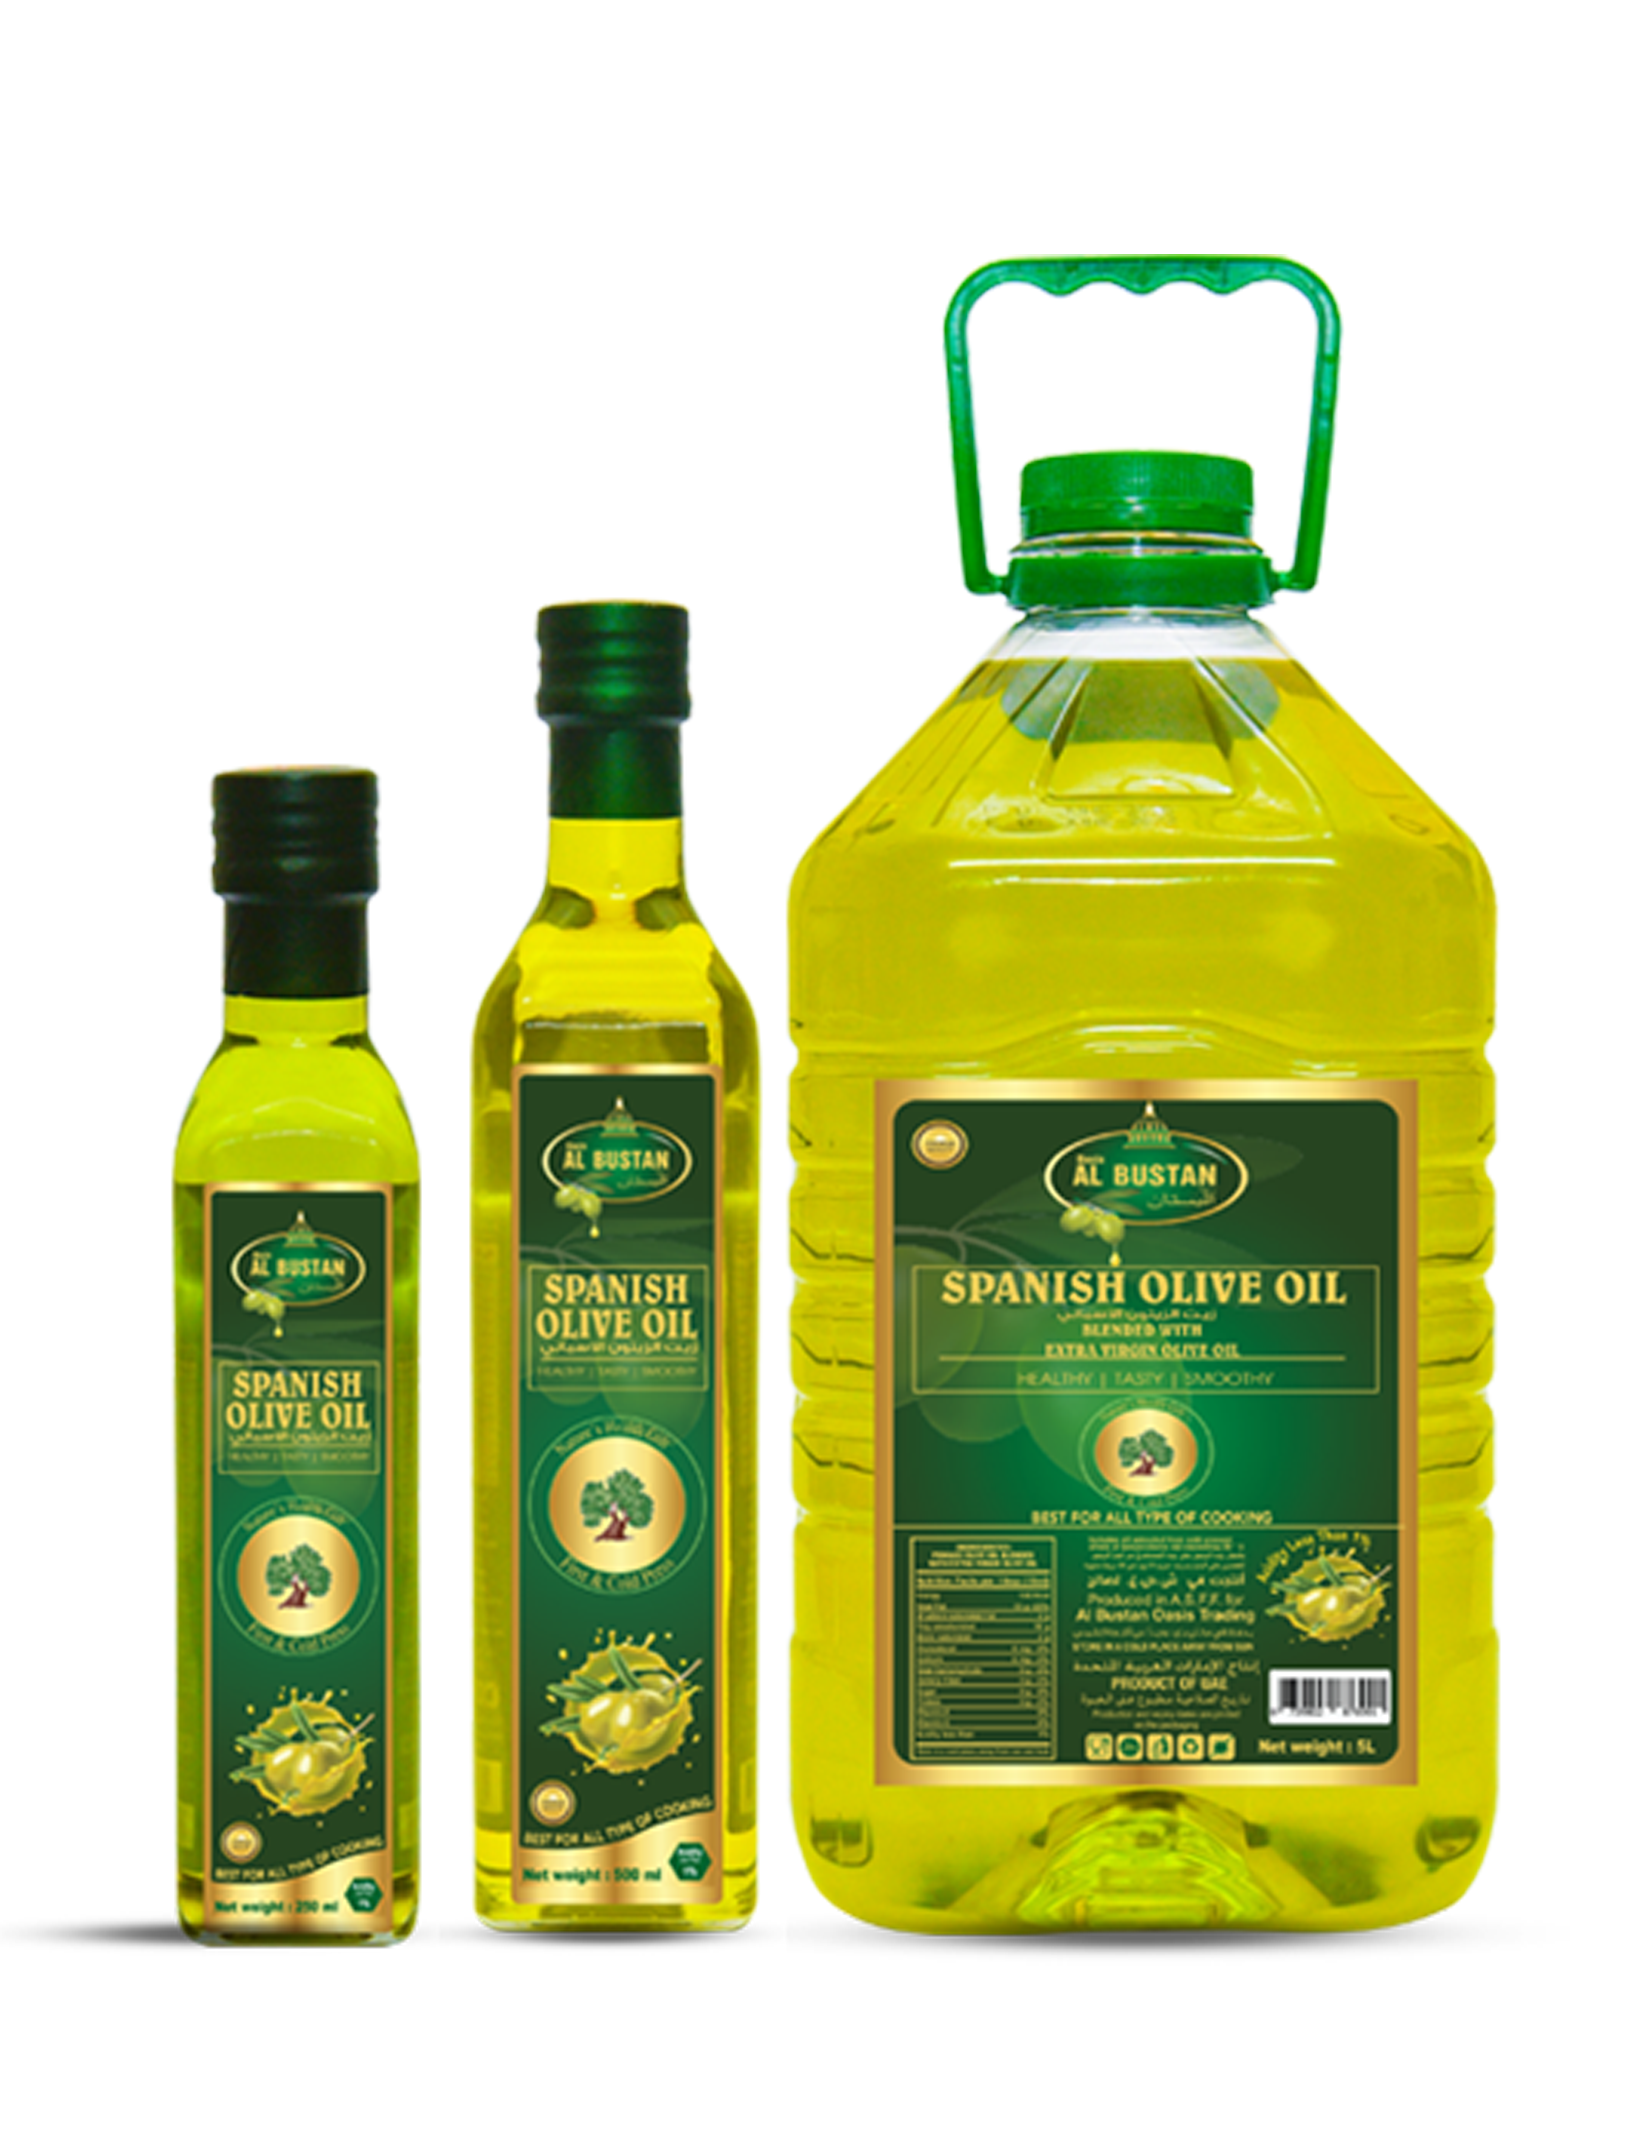 Al Bustan Spanish Olive Oil